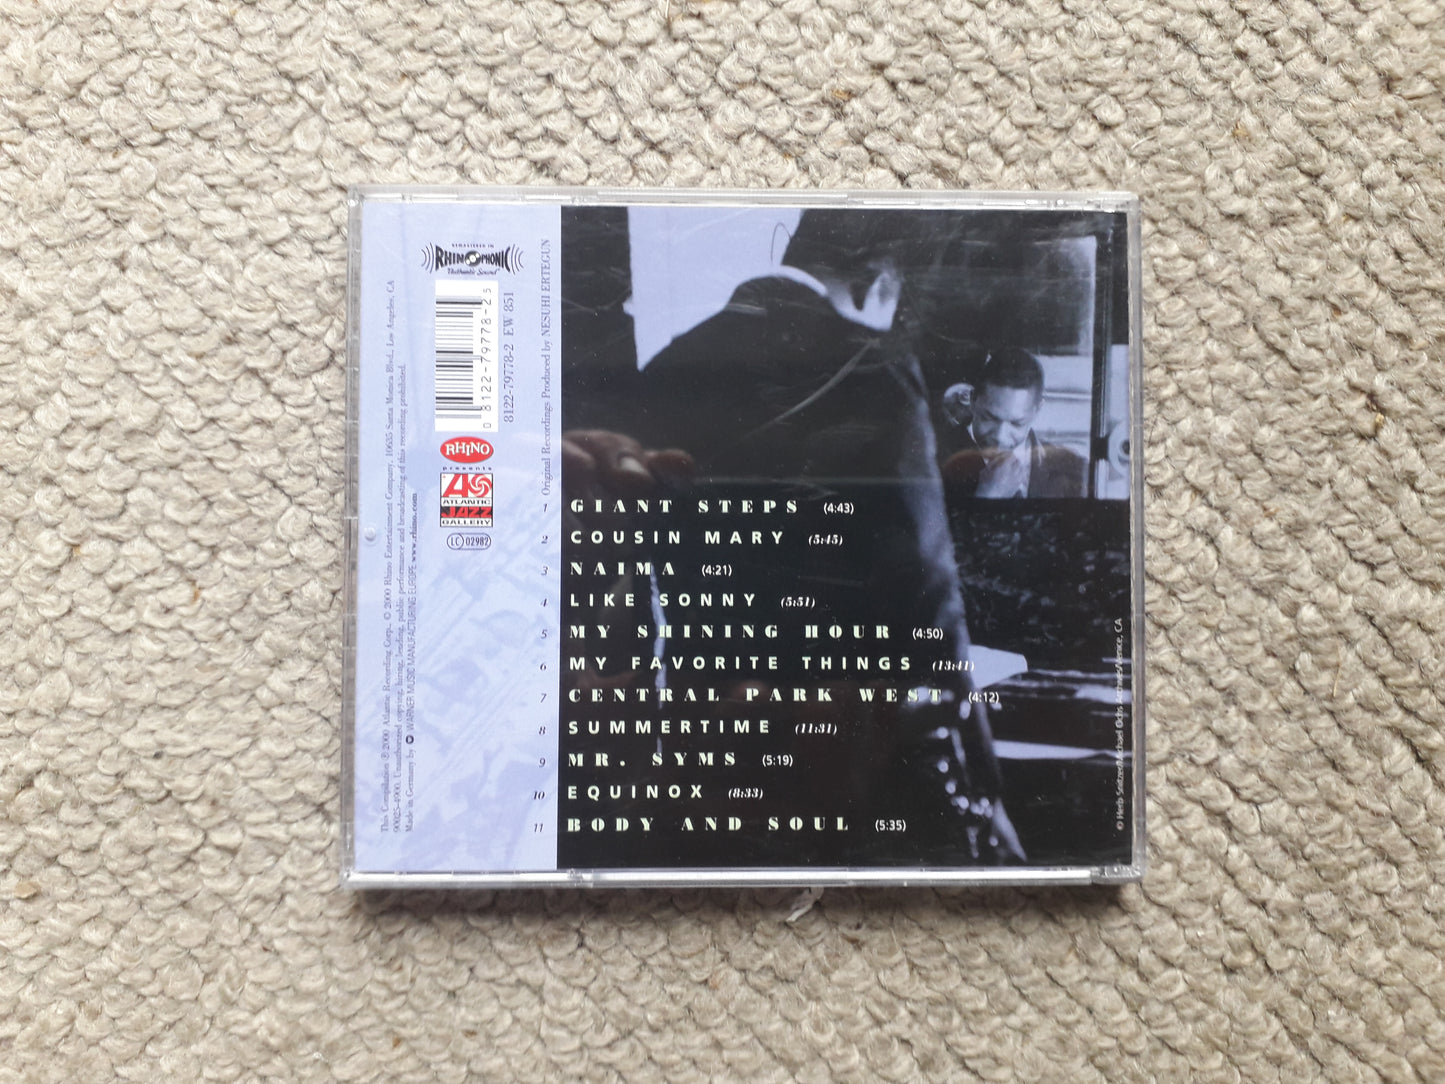 John Coltrane-The Very Best Of John Coltrane CD (8122-79778-2)